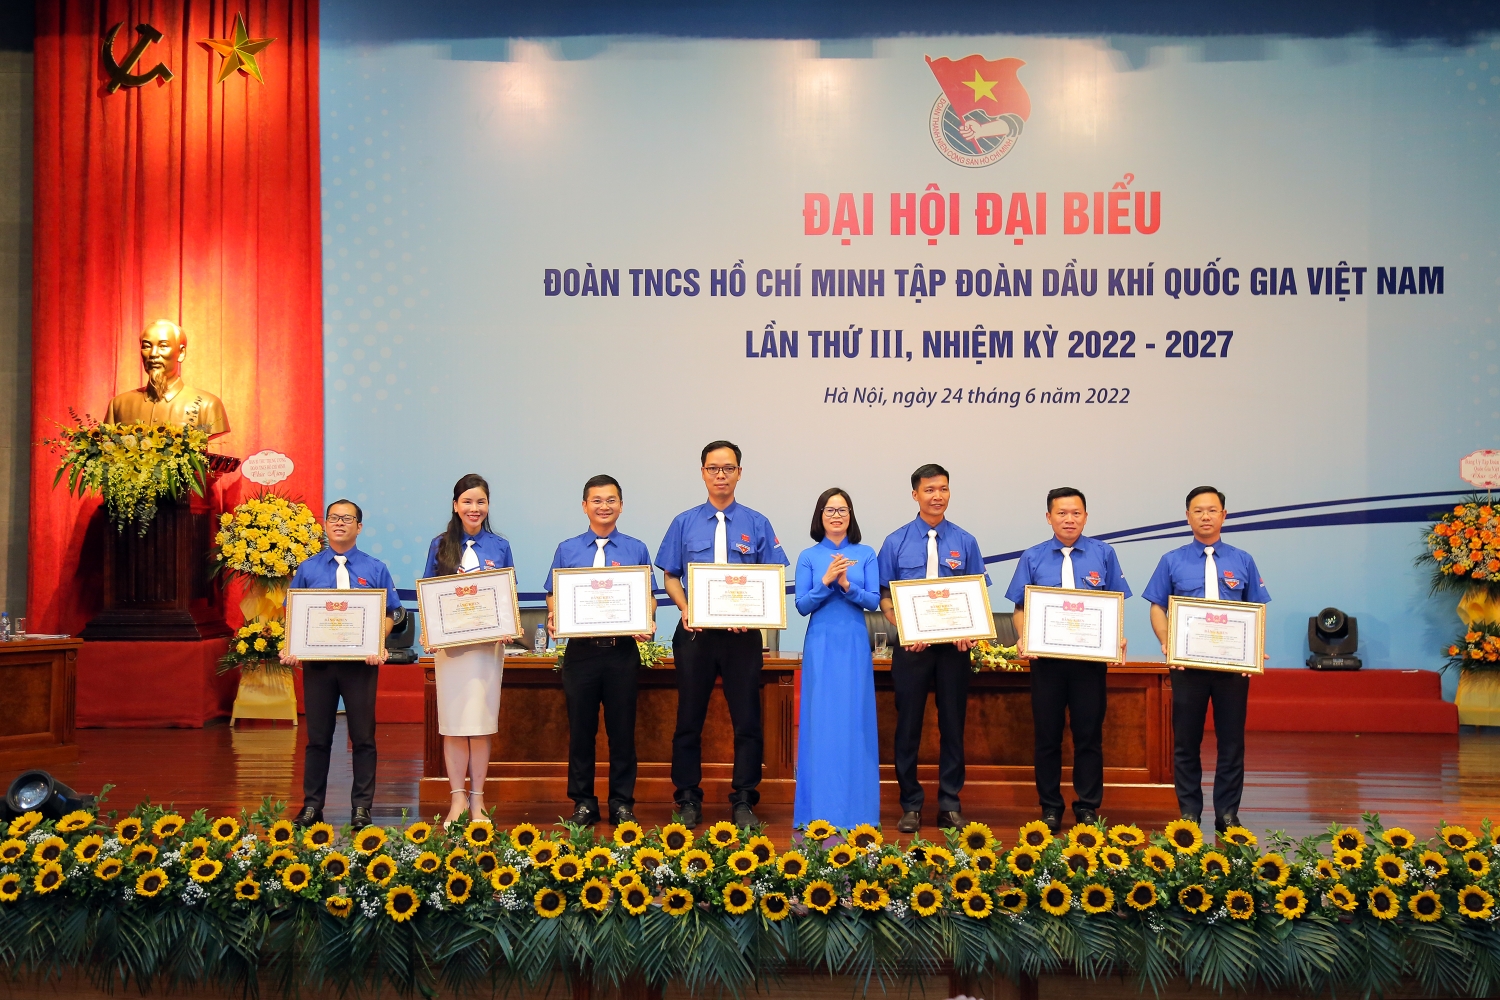 Đồng chí Hoàng Thị Minh Thu - Bí thư Đoàn Khối DNTW trao tặng Bằng khen của Đoàn Khối cho các tập thể xuất sắc.